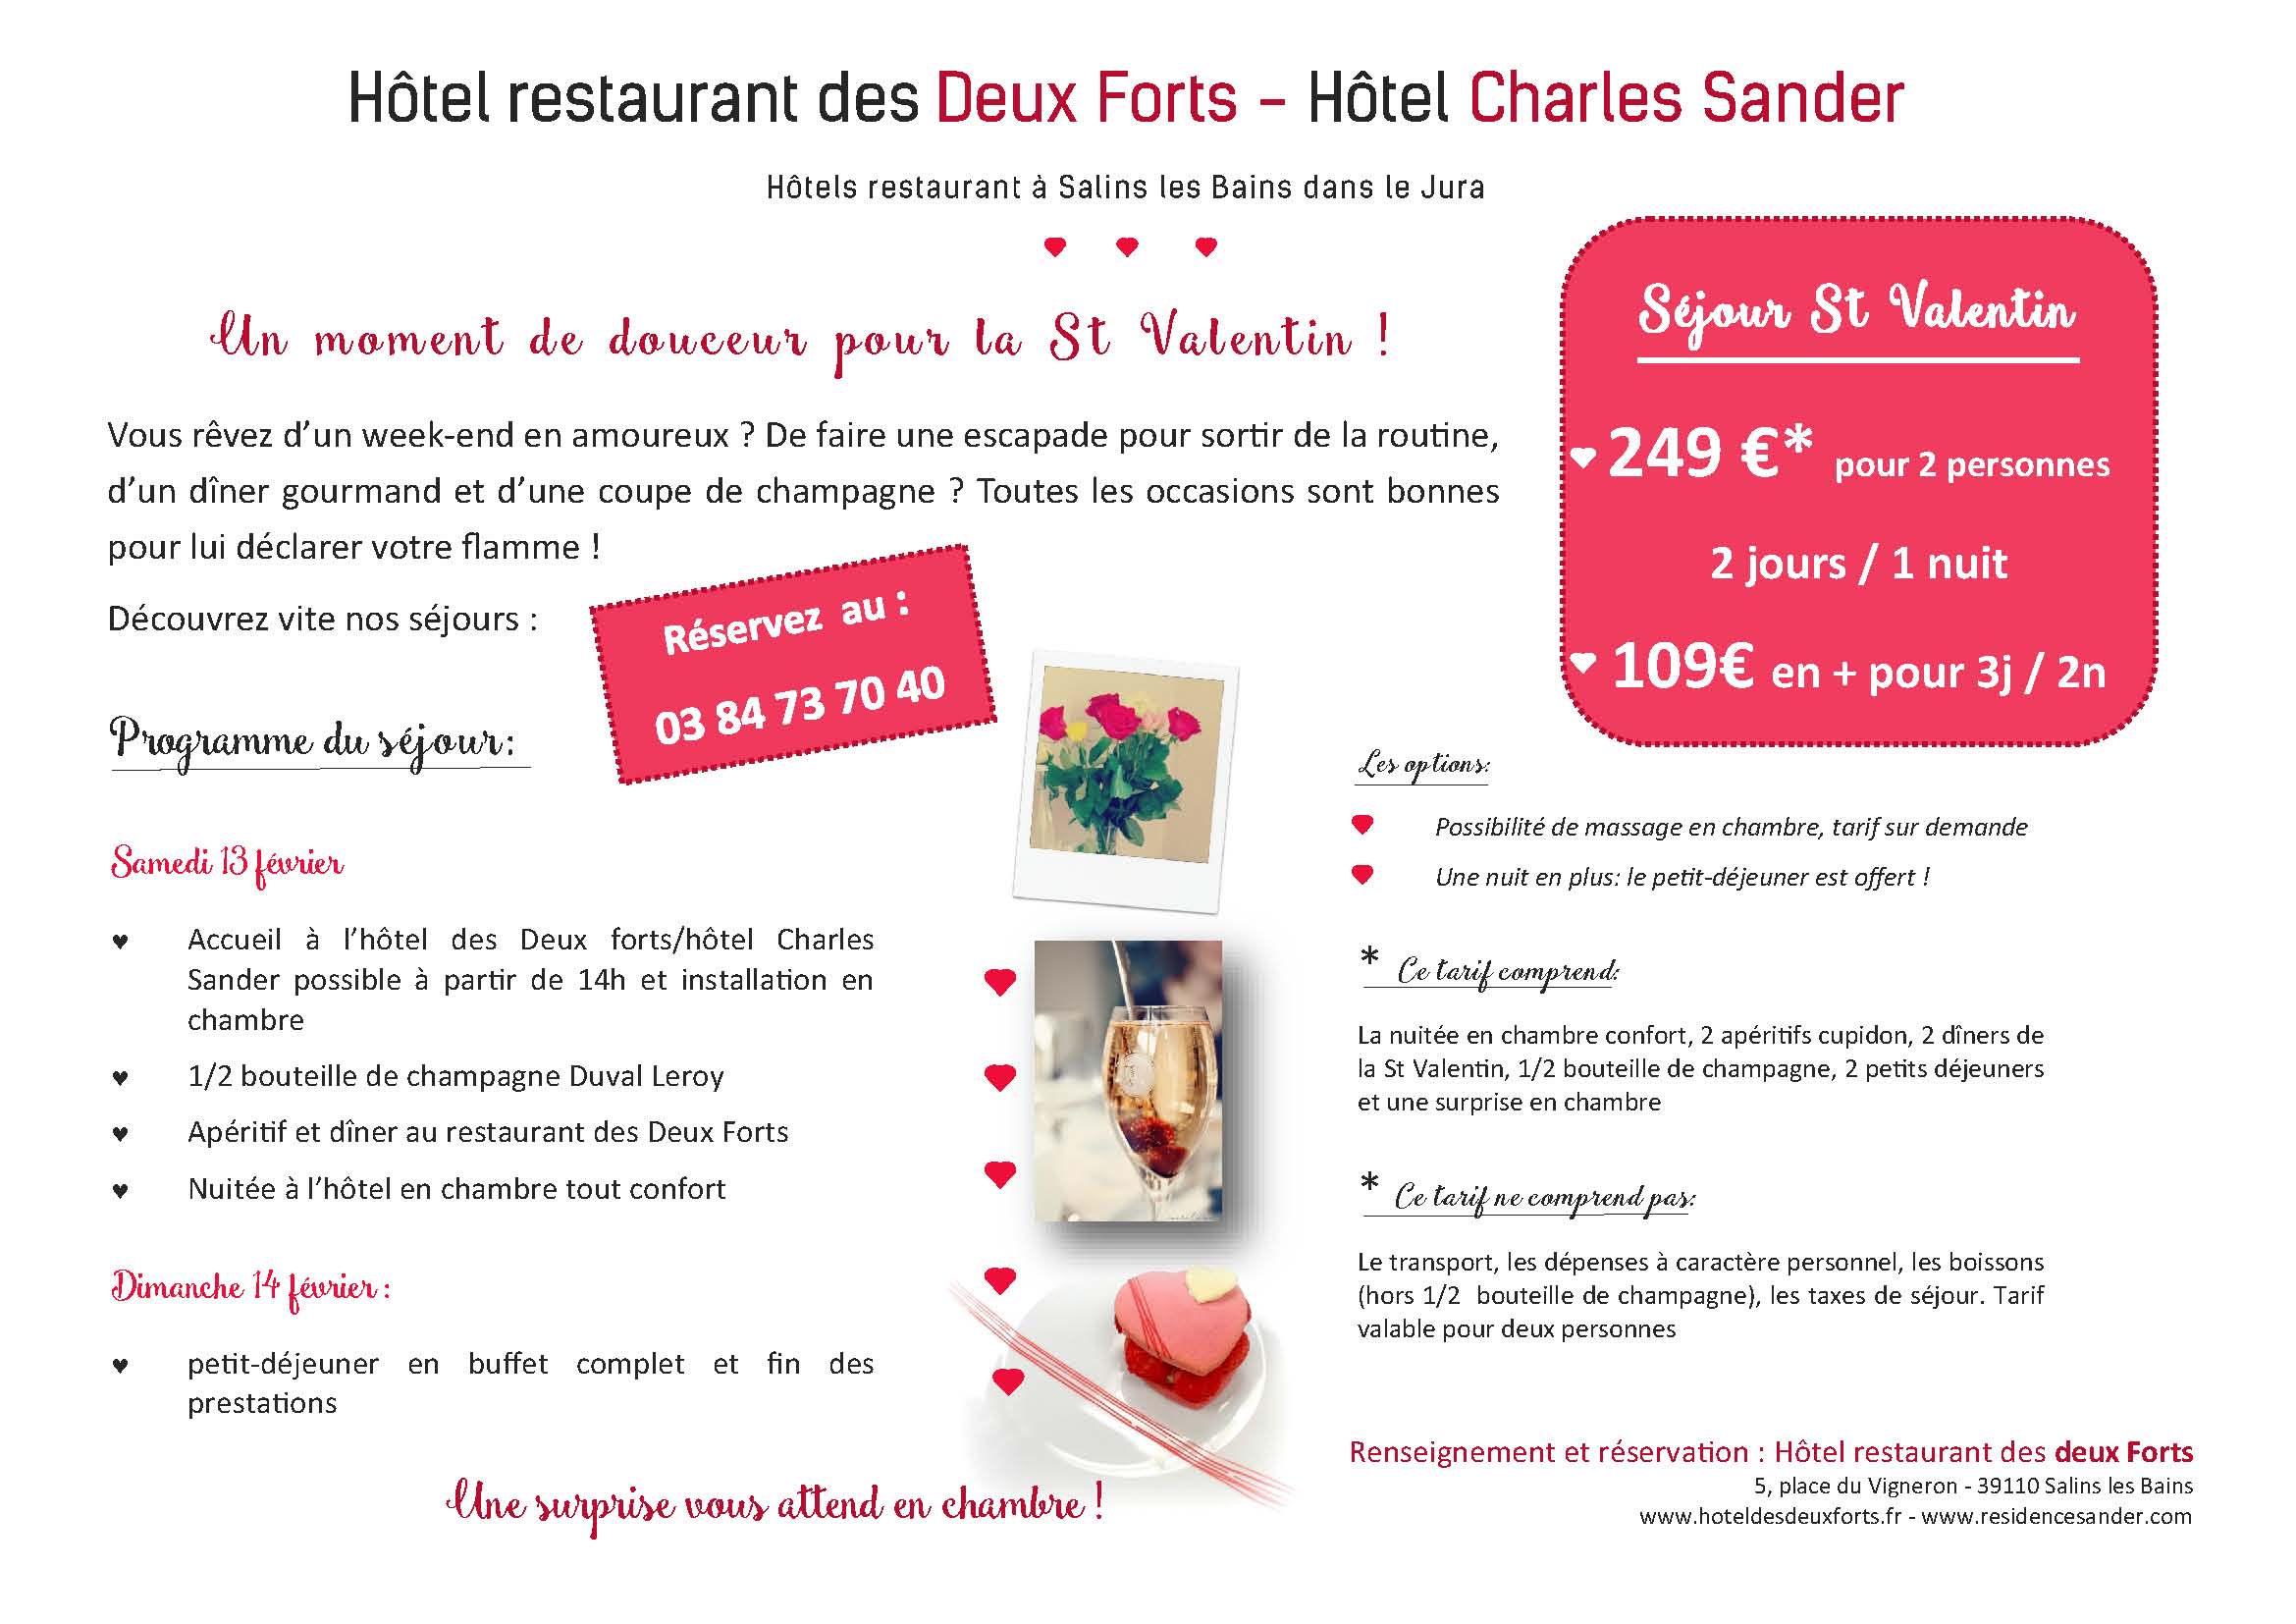 Séjour st Valentin hotel restaurant des Deux Forts et Charles Sander ...